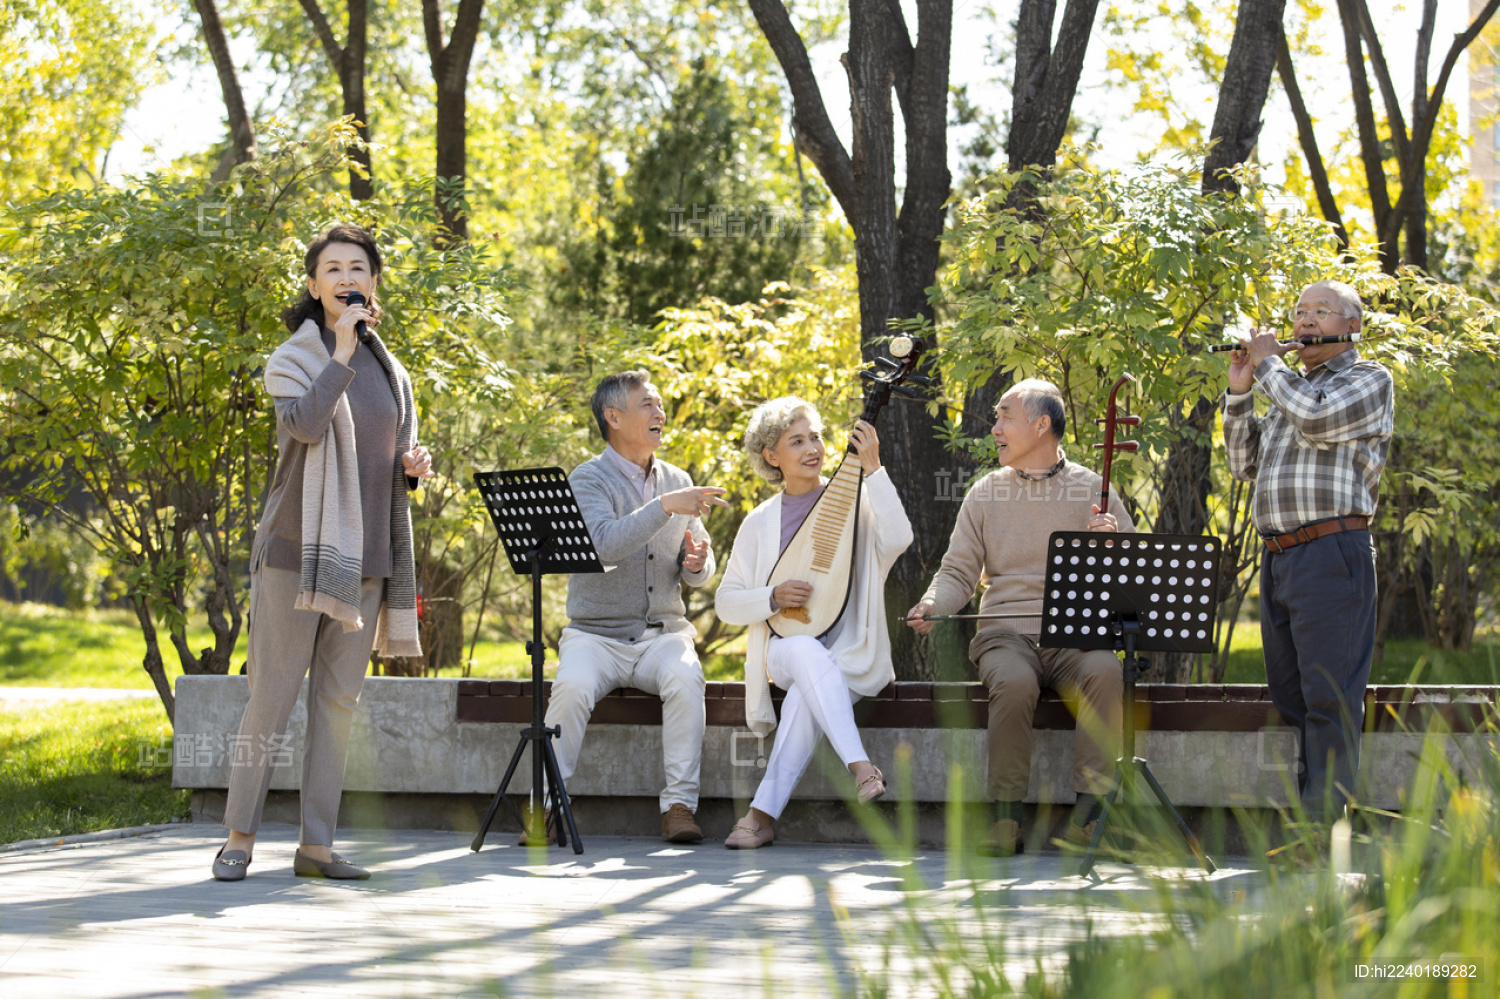 幸福的老年人在公园唱歌-蓝牛仔影像-中国原创广告影像素材